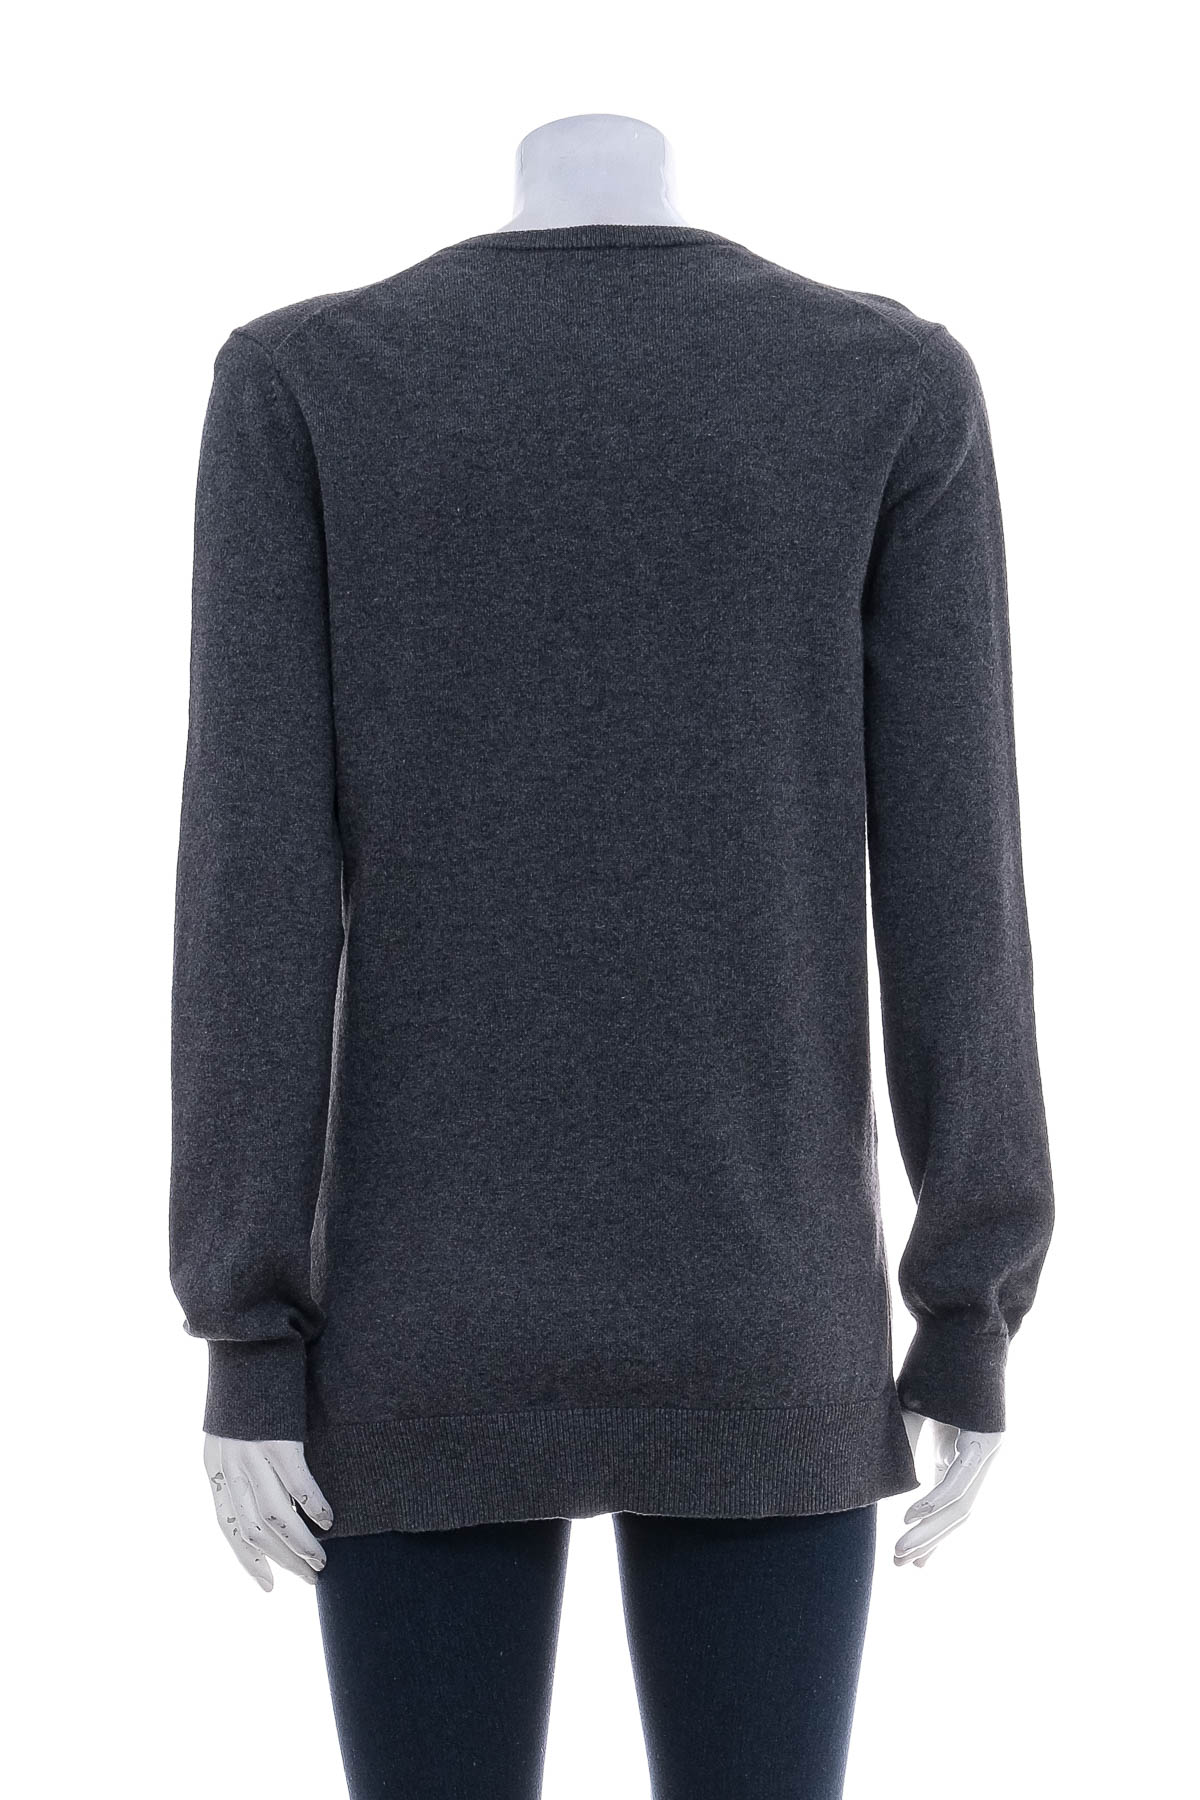 Women's sweater - Lawrence Grey - 1